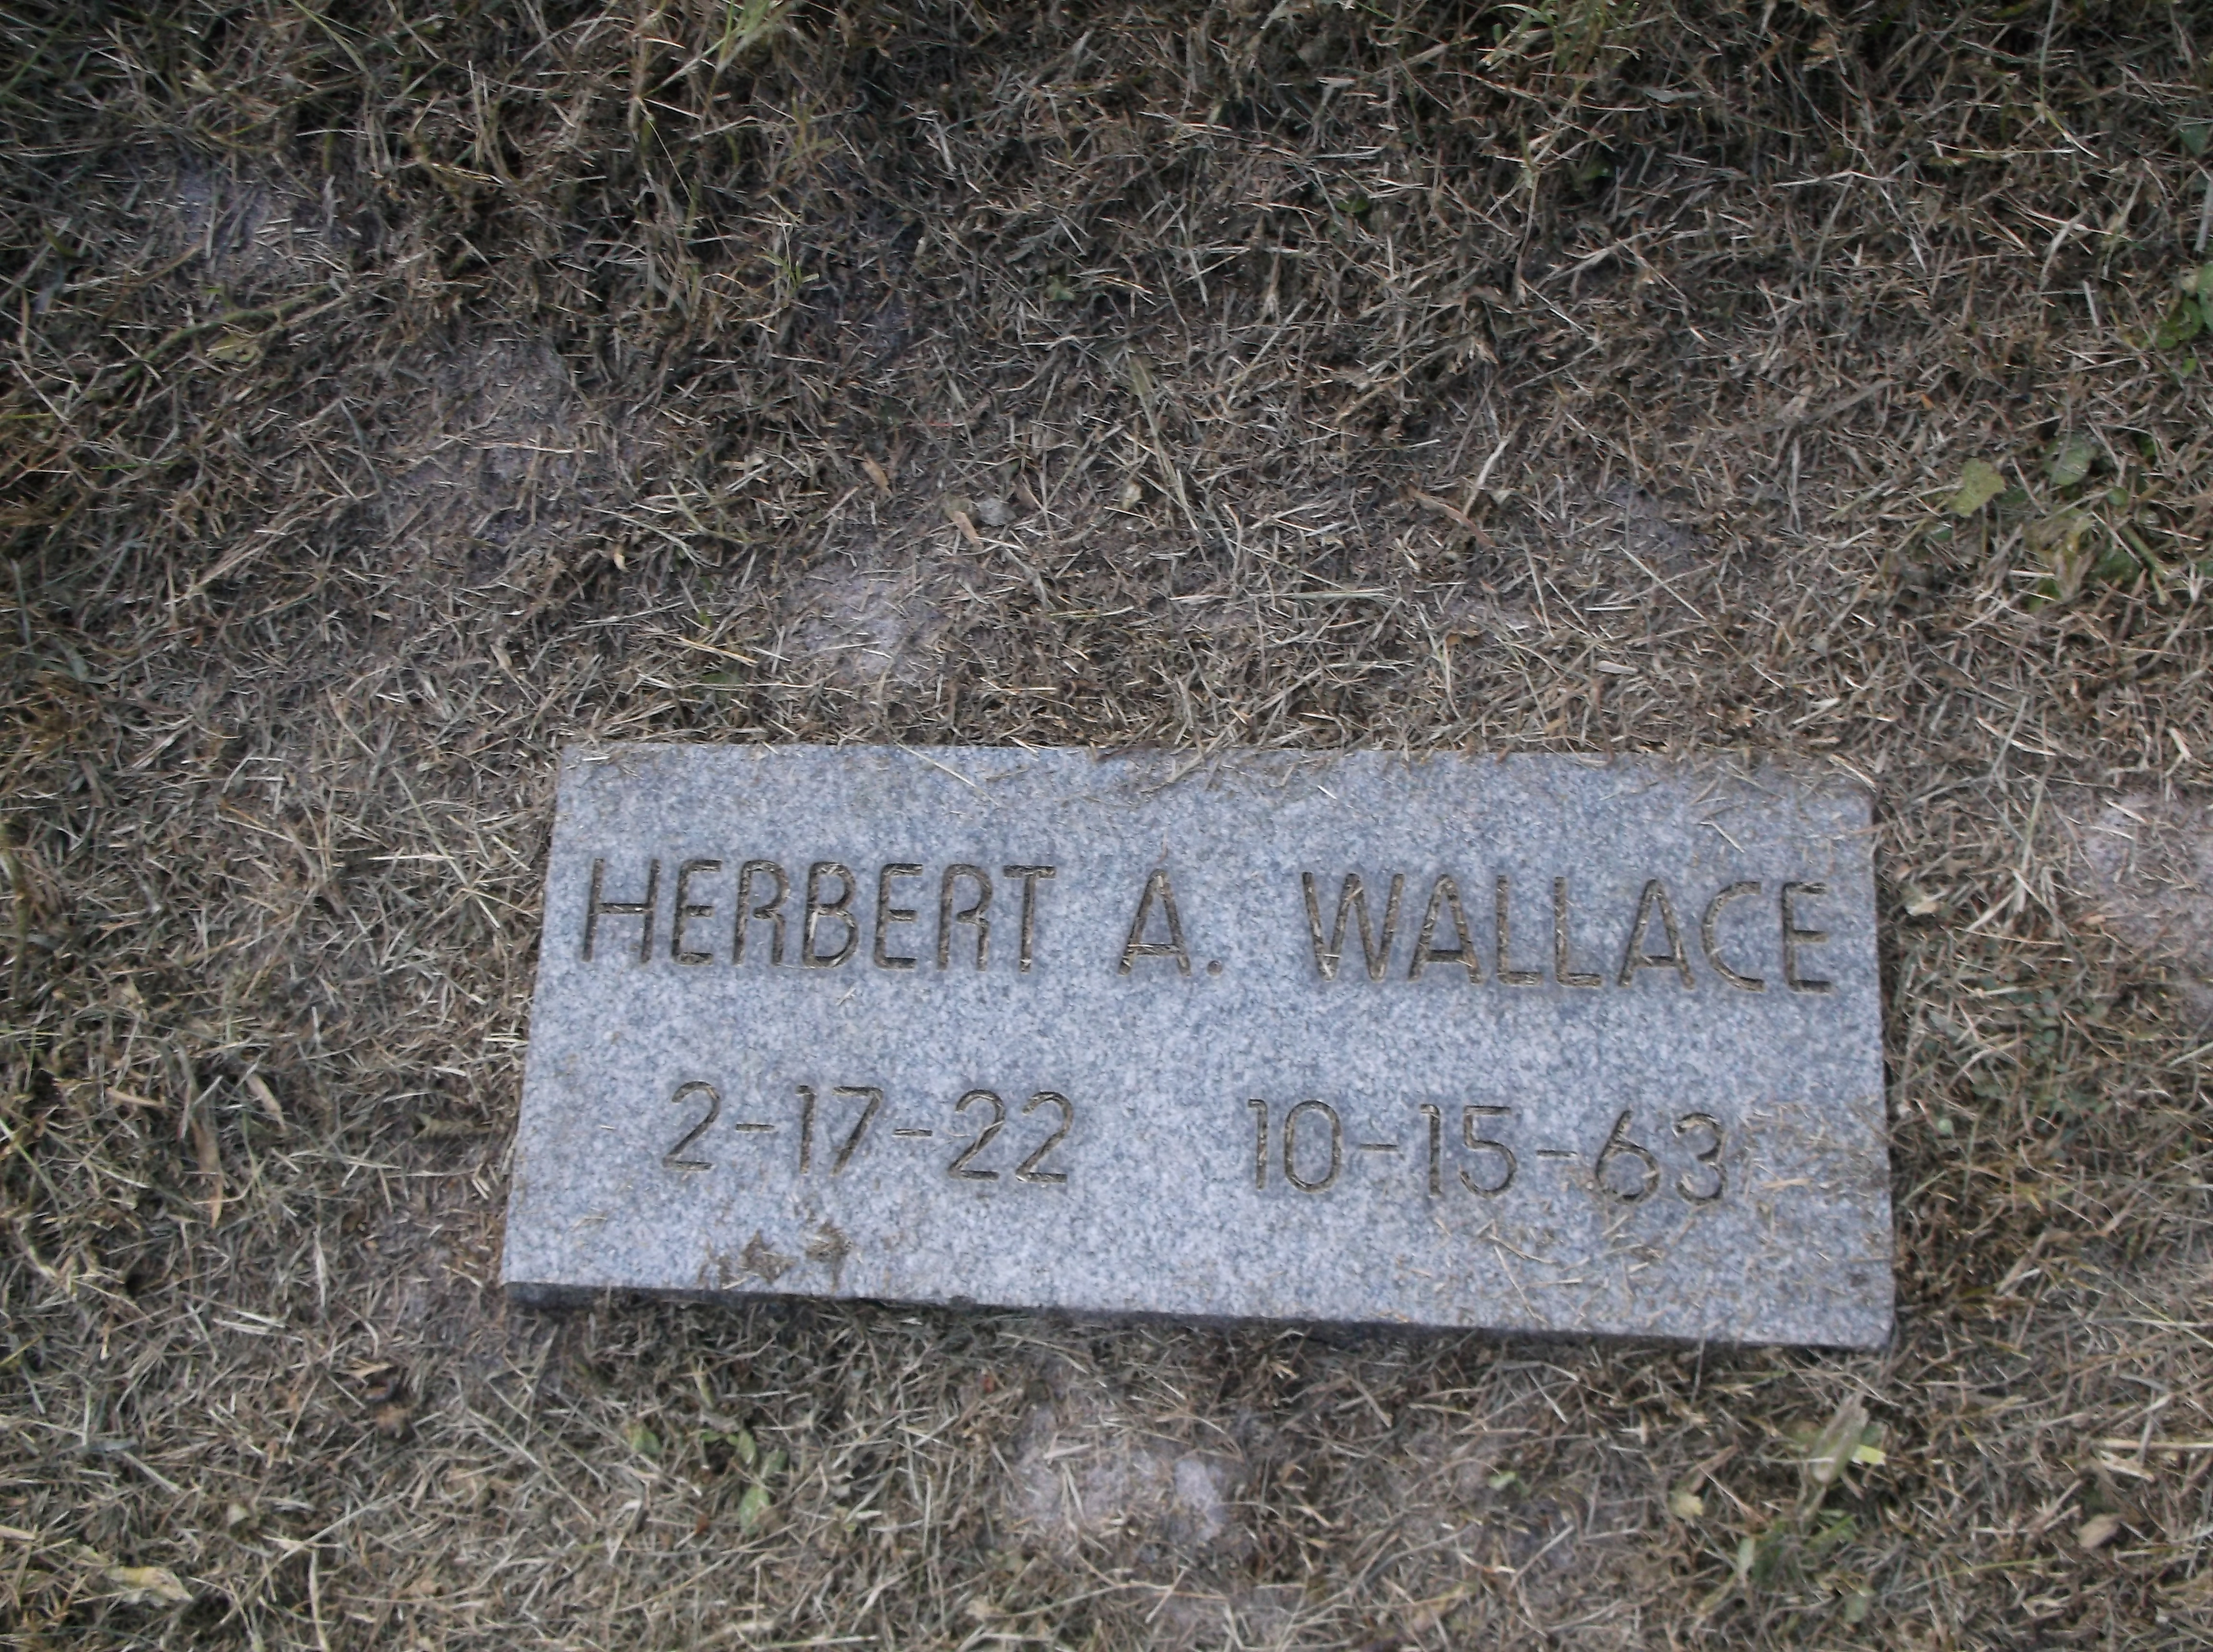 Herbert A Wallace